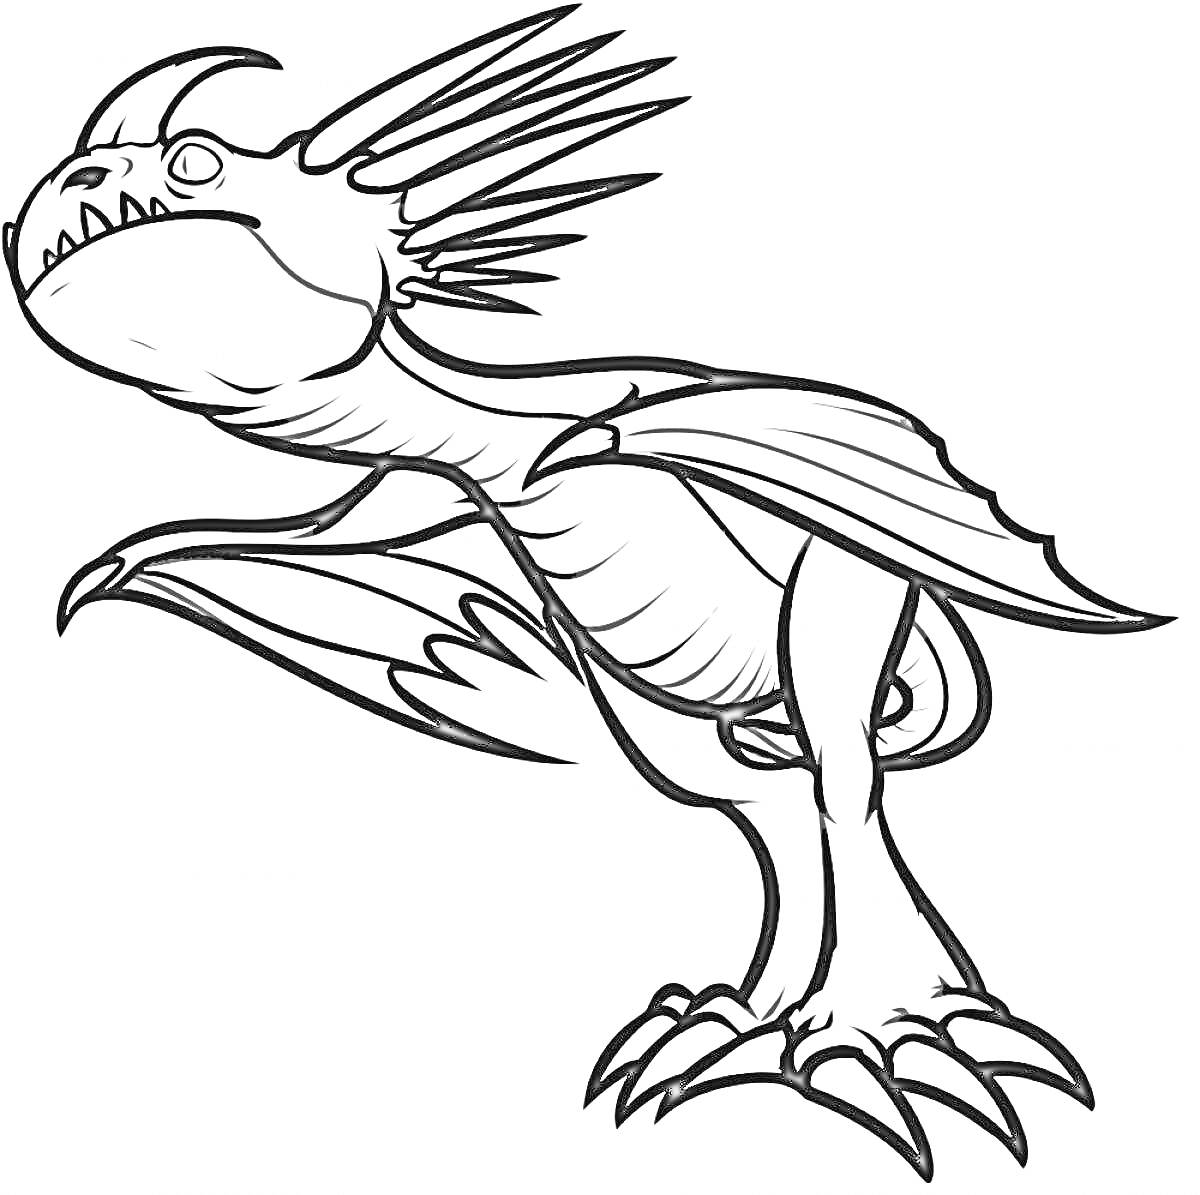 Раскраска Дракон Громгильда с крыльями, когтями и шипами